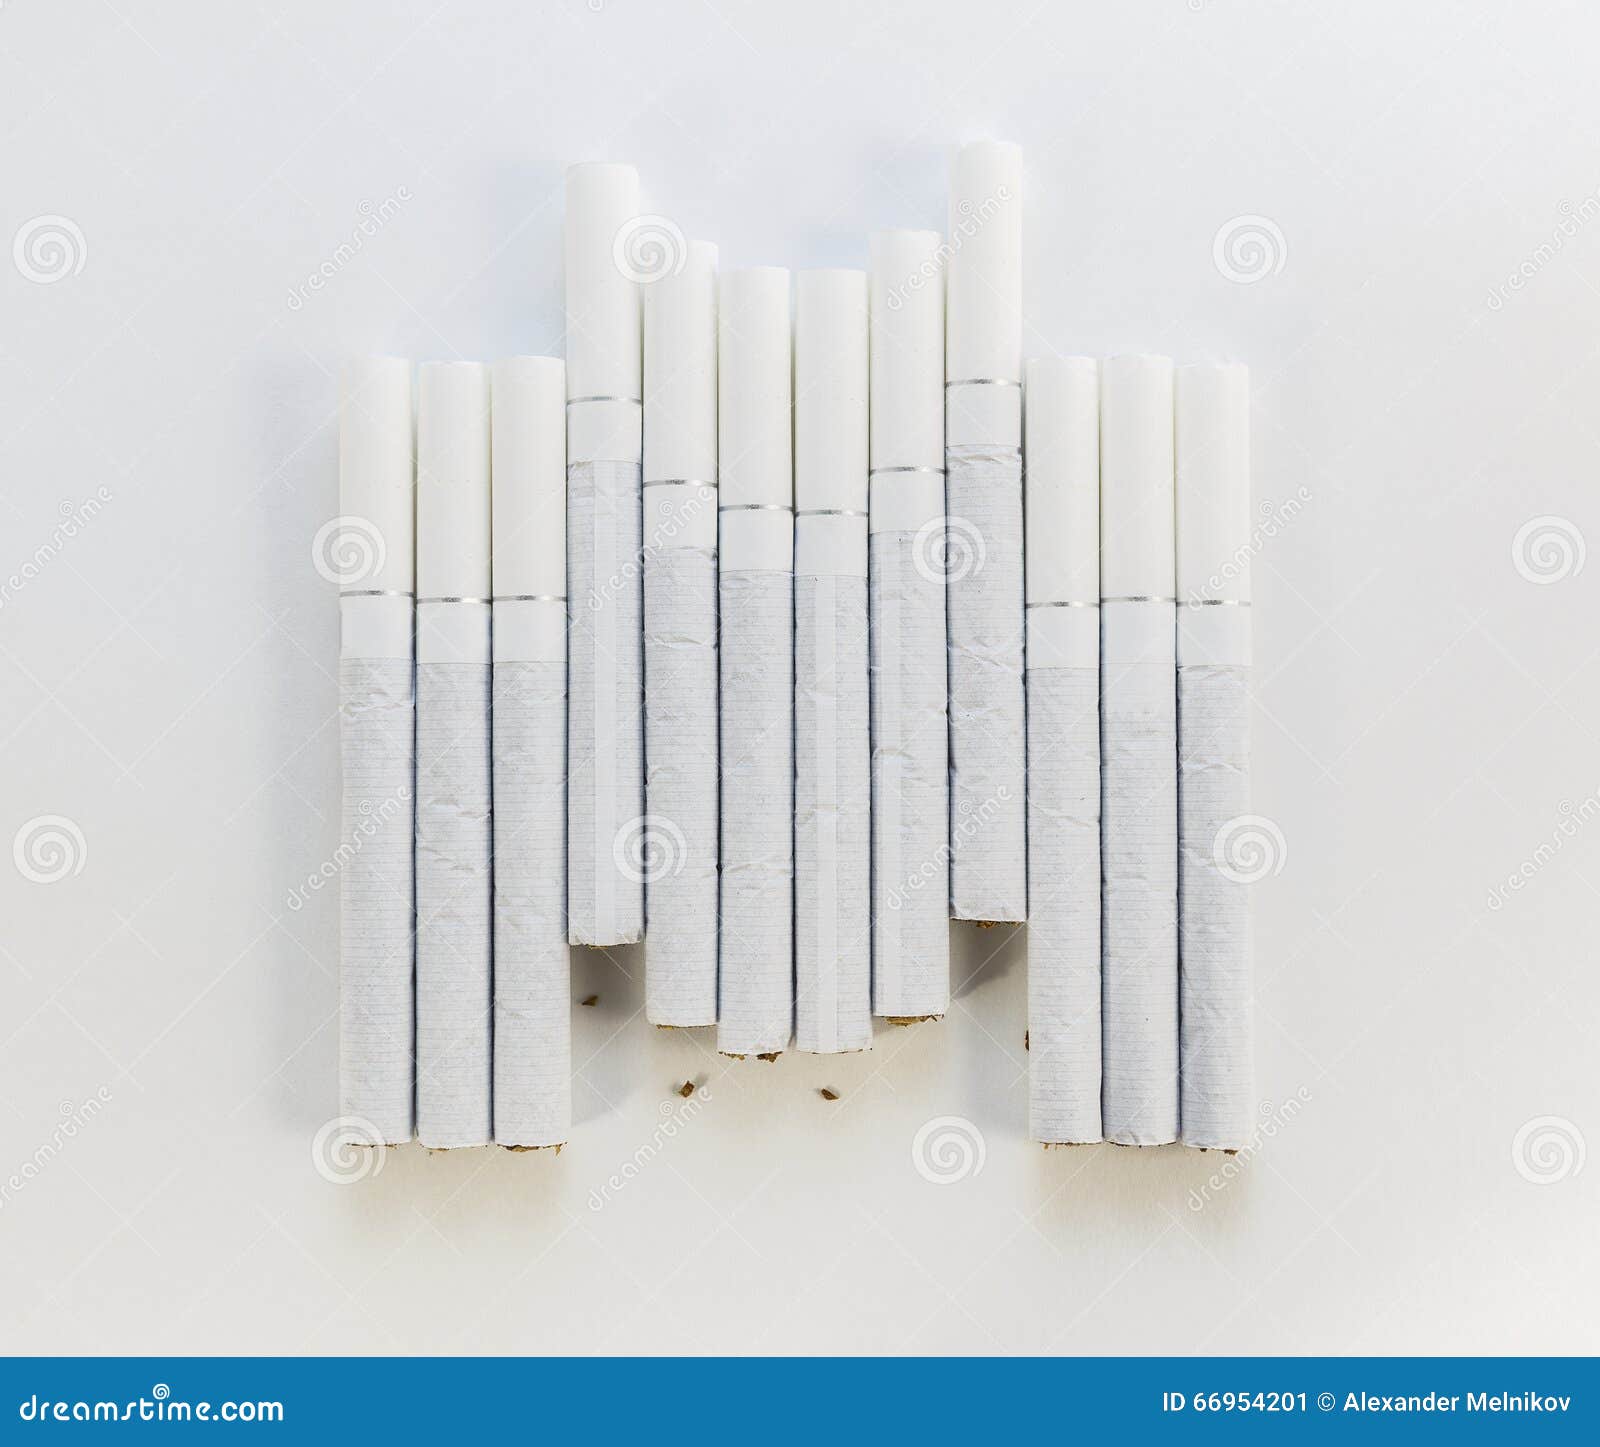 Сигареты с белым фильтром. Белые сигареты с белым фильтром. Сигариллы с белым фильтром. Тонкие сигареты с белым фильтром.